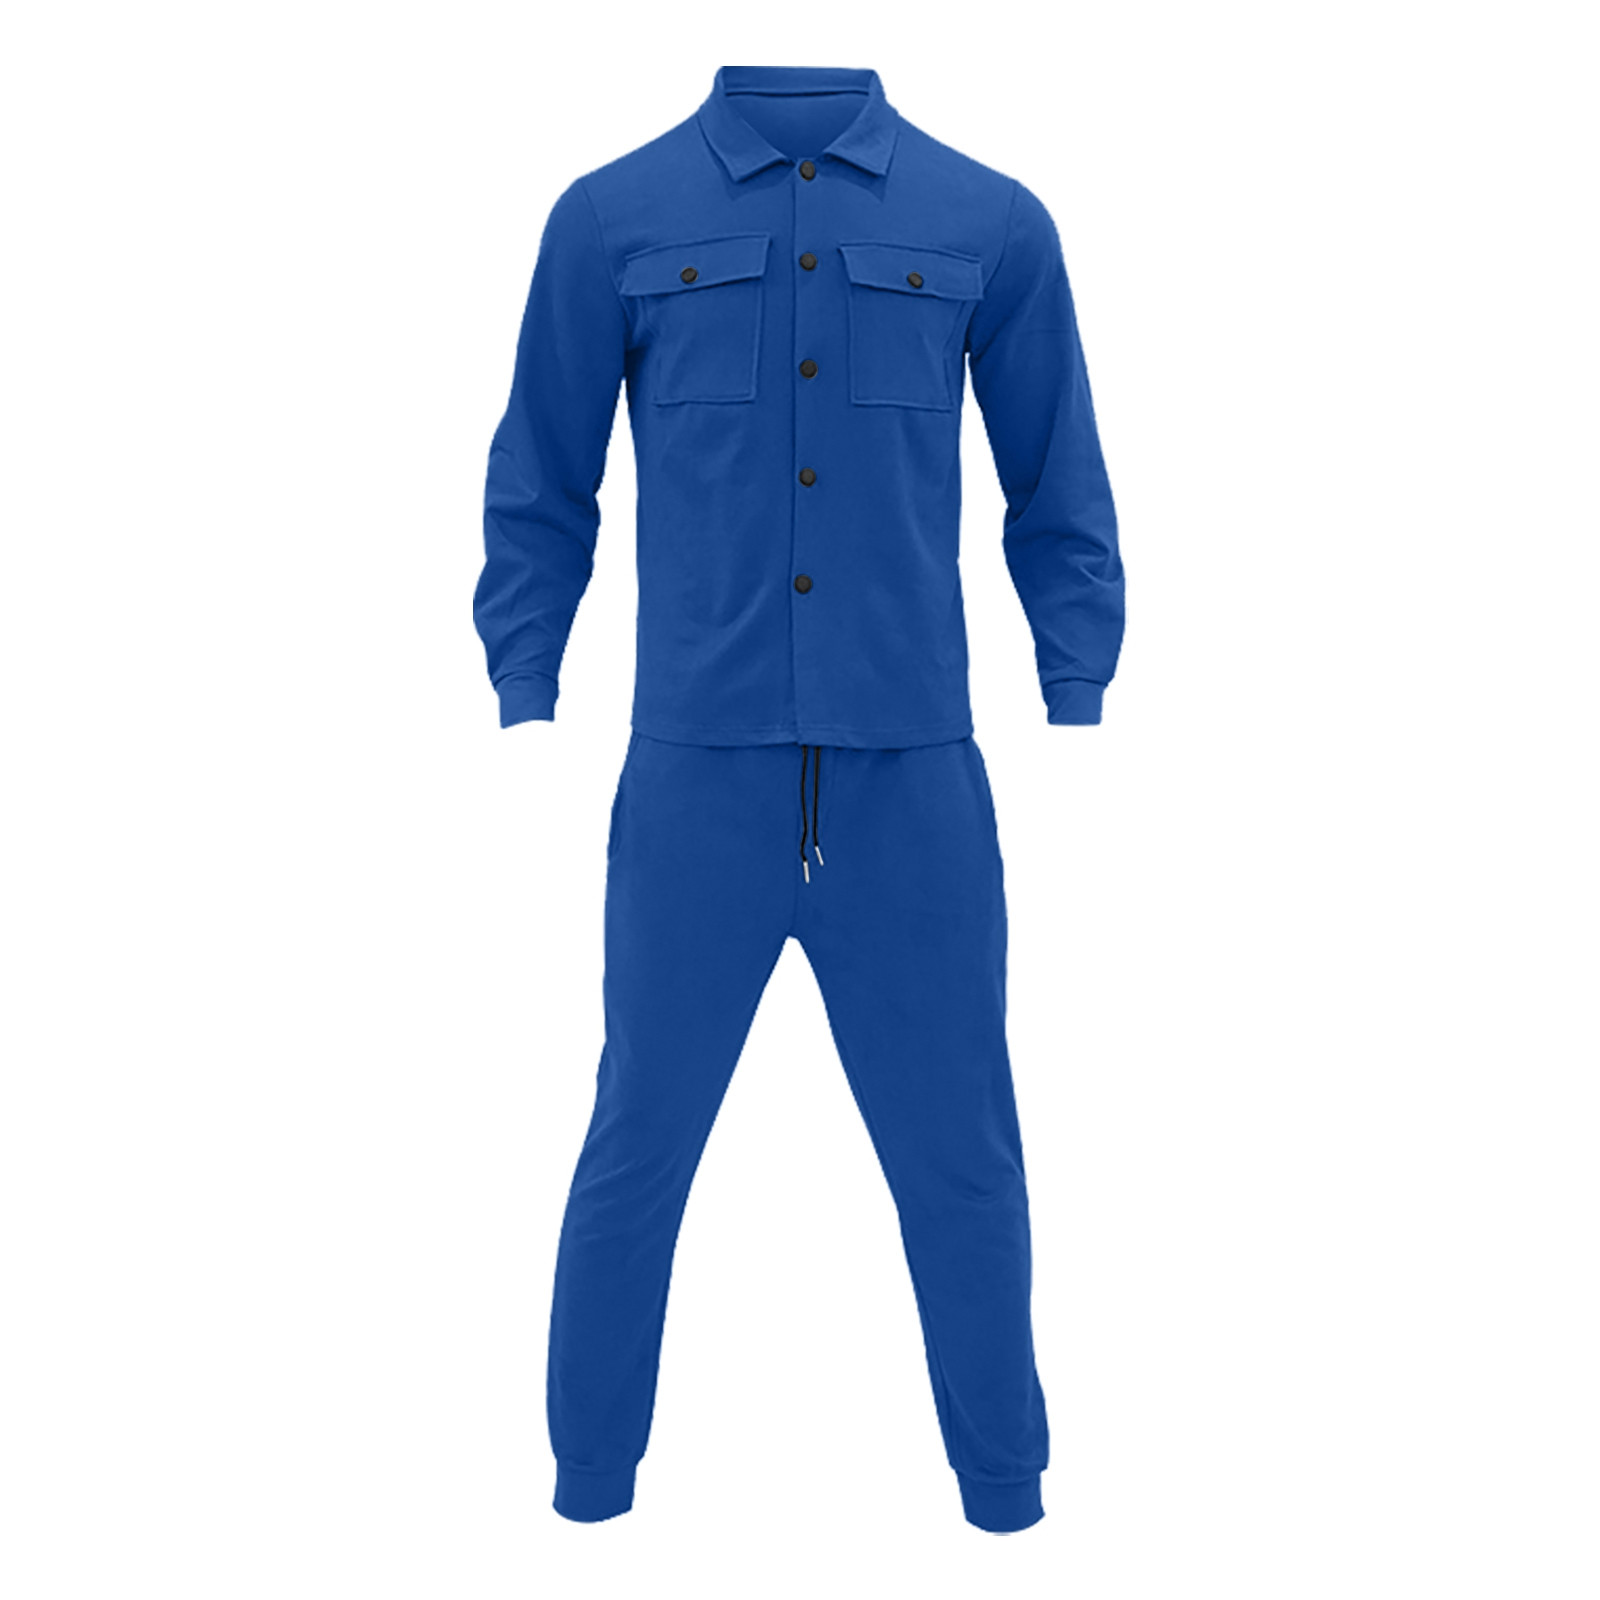 8QIDA Men's Suit Vests and Pants Men Sweat Suits Men 2 Piece Light ...